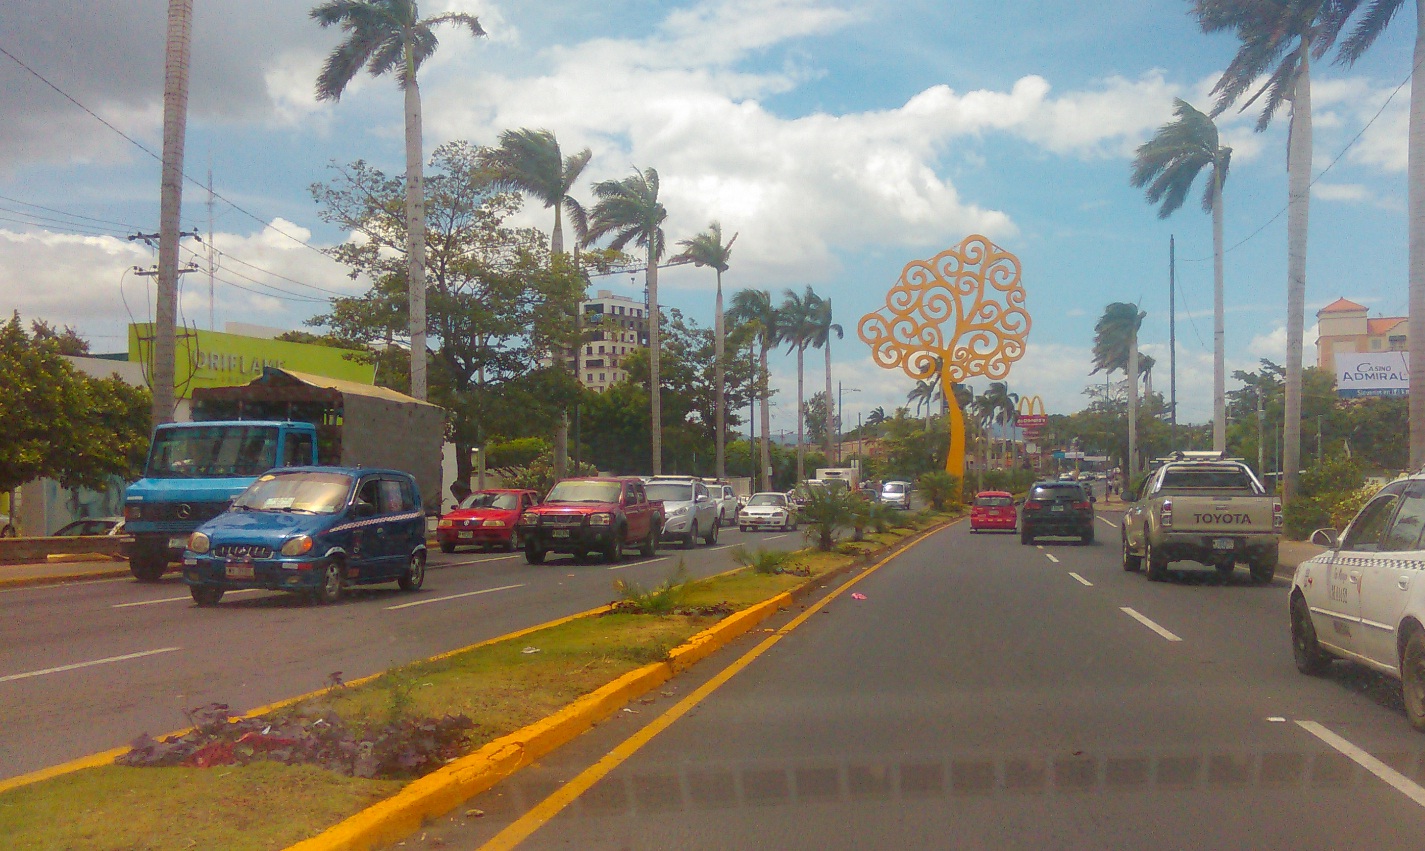 Carretera a Masaya icono turístico de Nicaragua